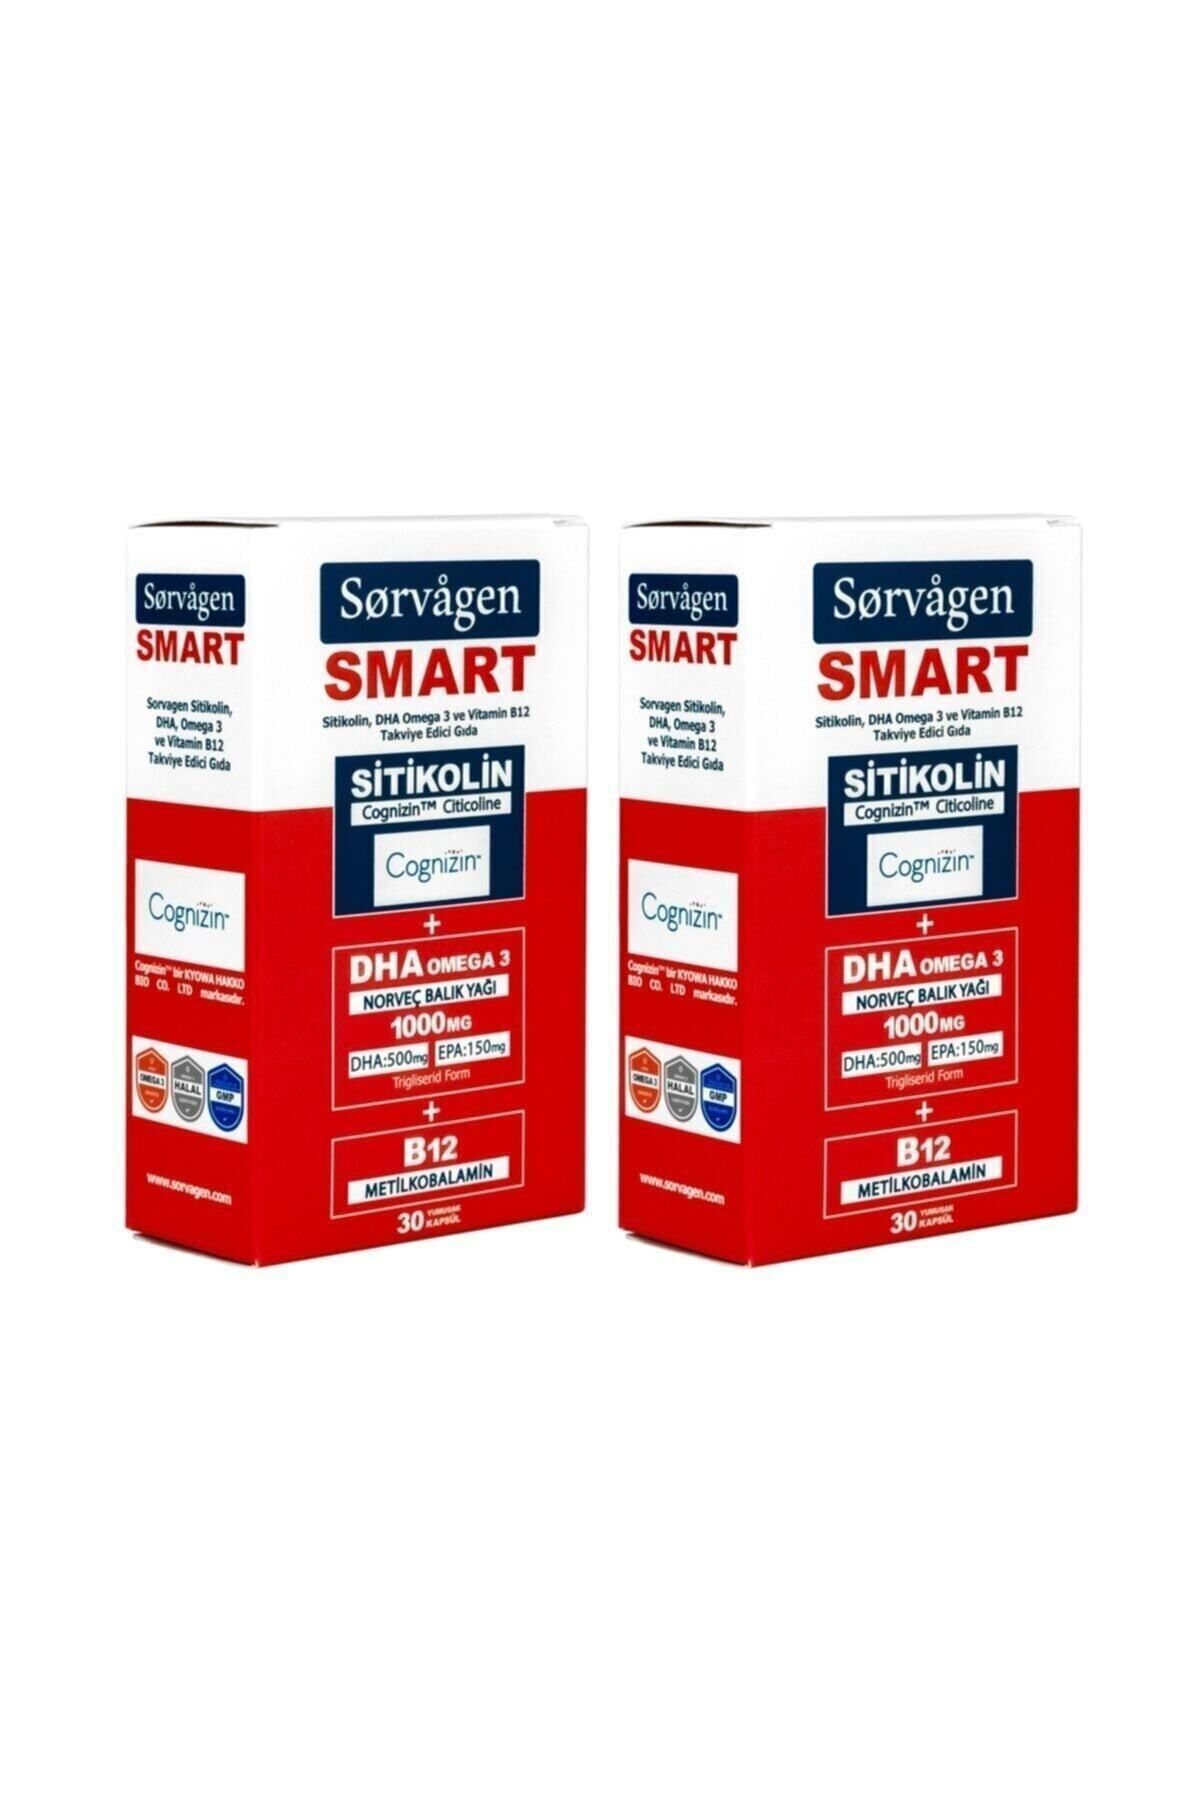 Sorvagen Smart Sitikolin, Dha Omega 3 Ve B12 (30 Kapsül) - 2 Adet